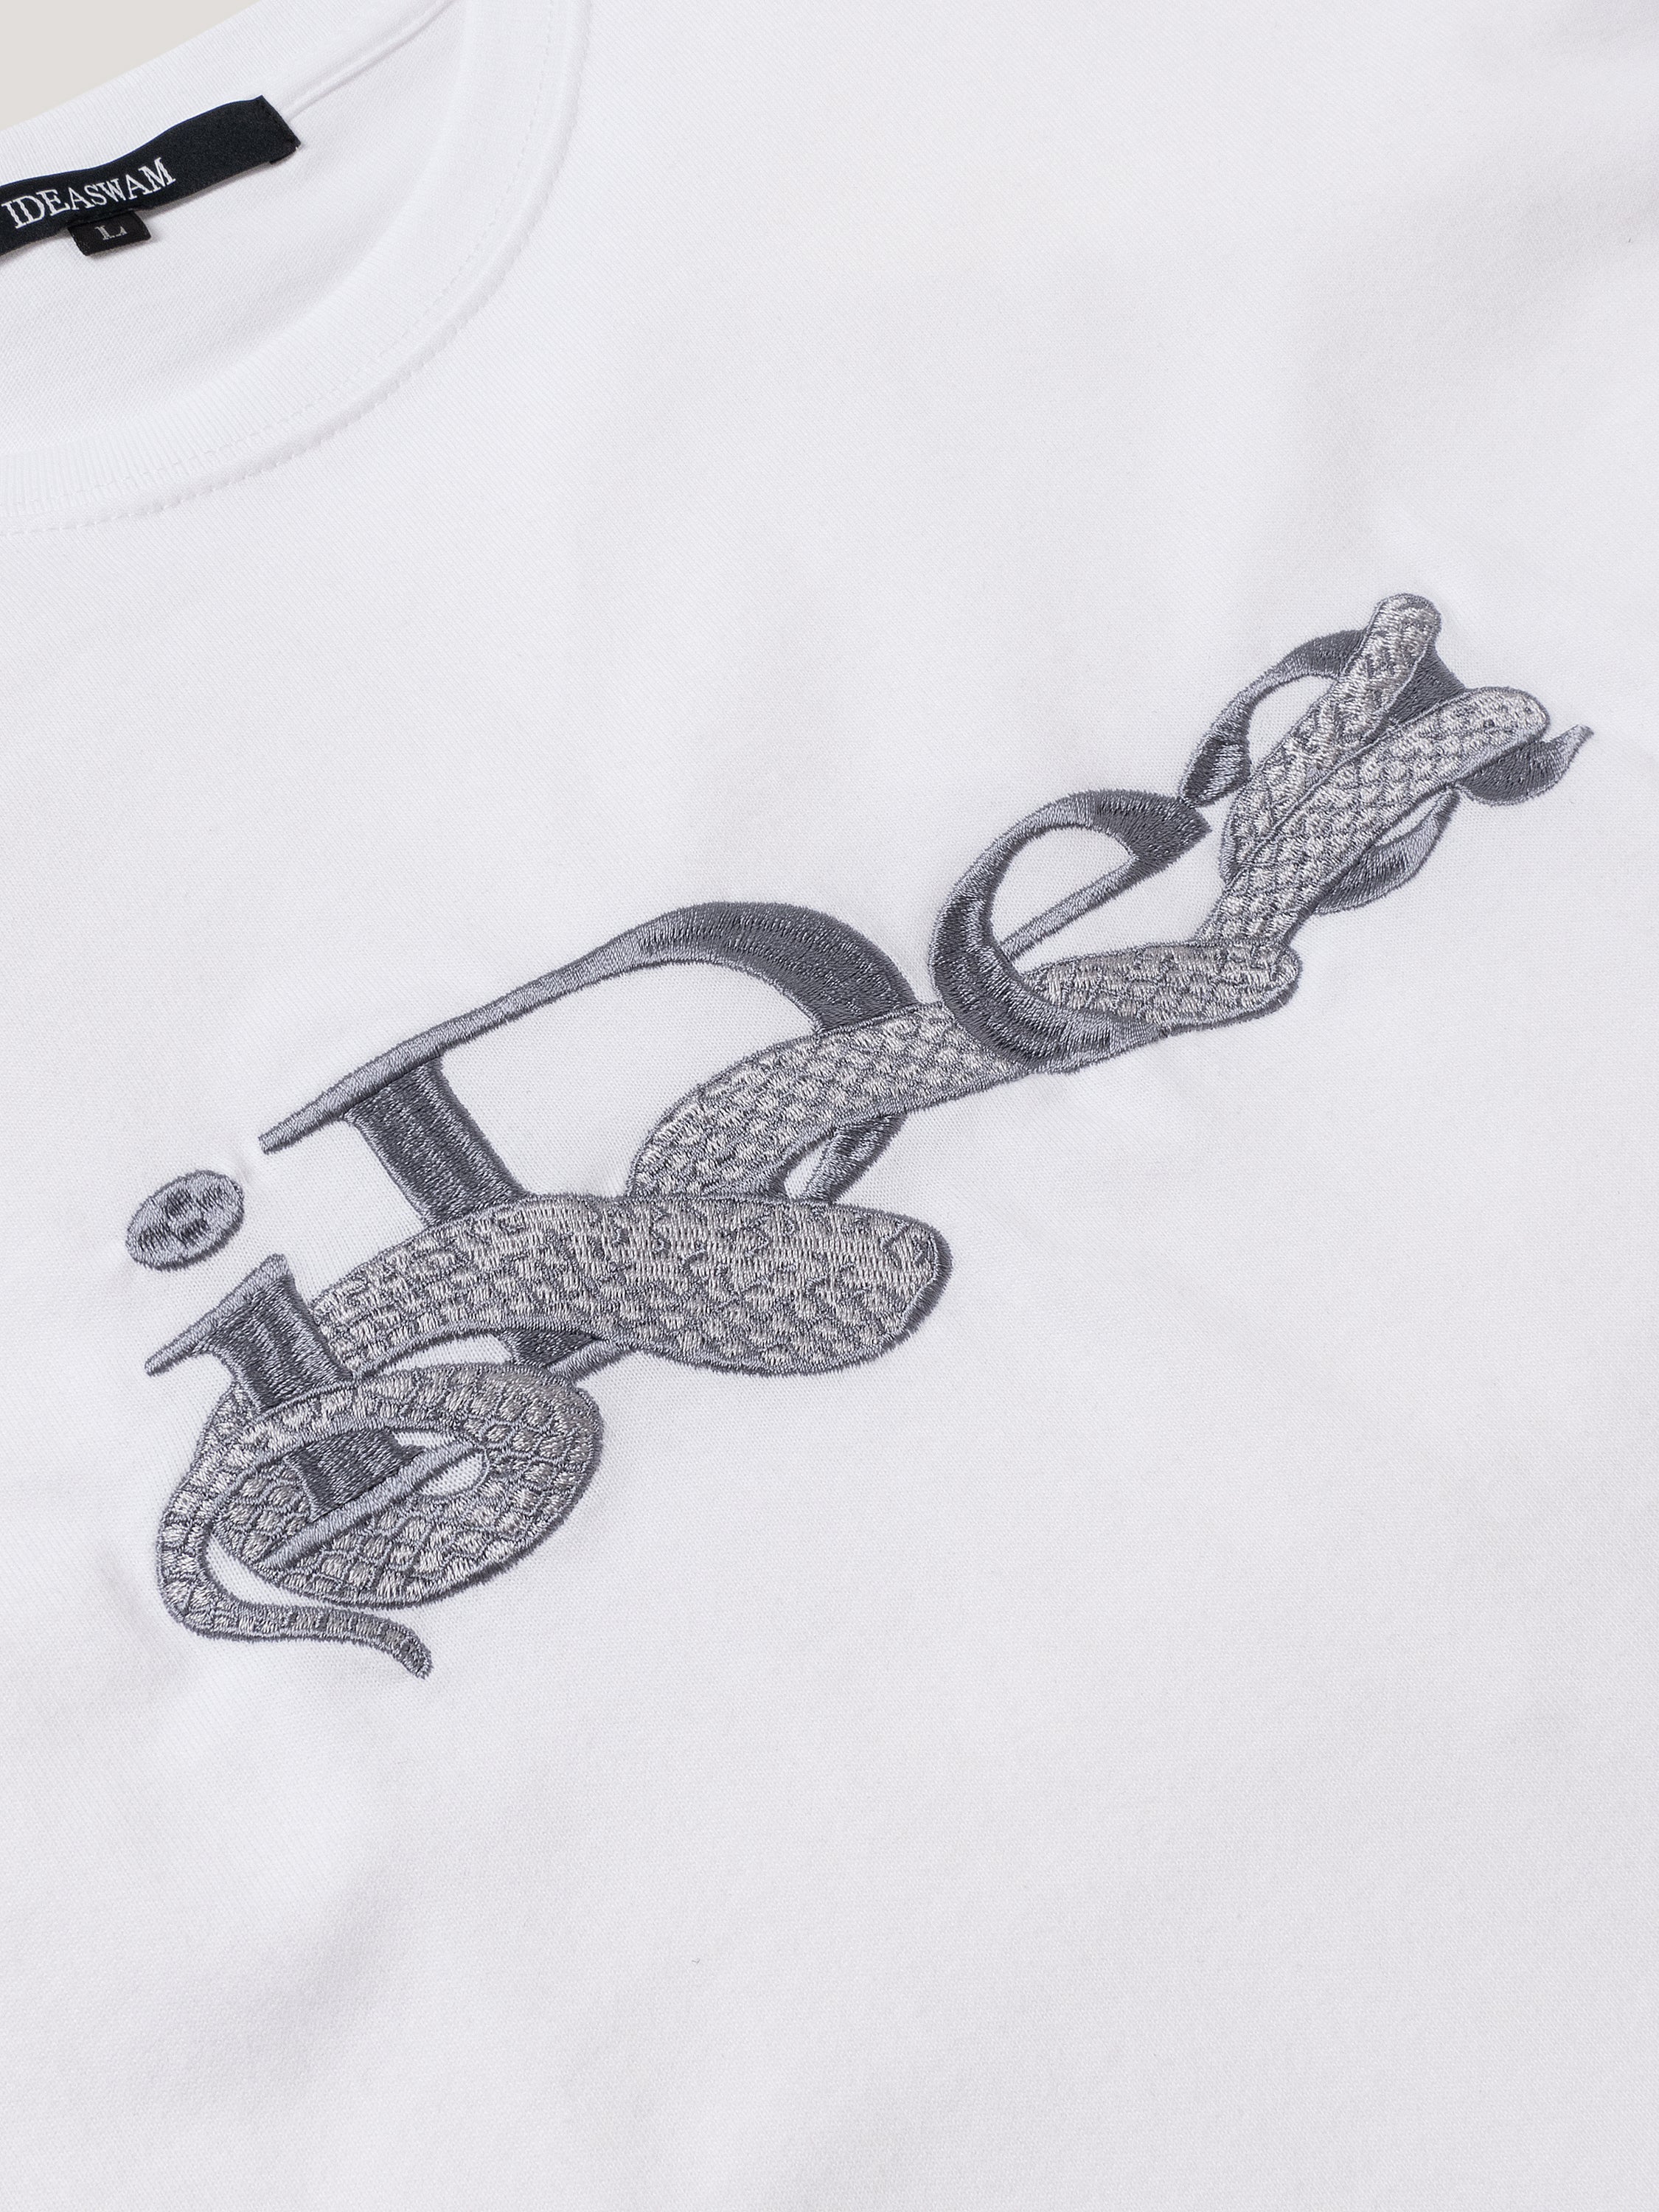 ideaswam snake logo t-shirt ホワイト